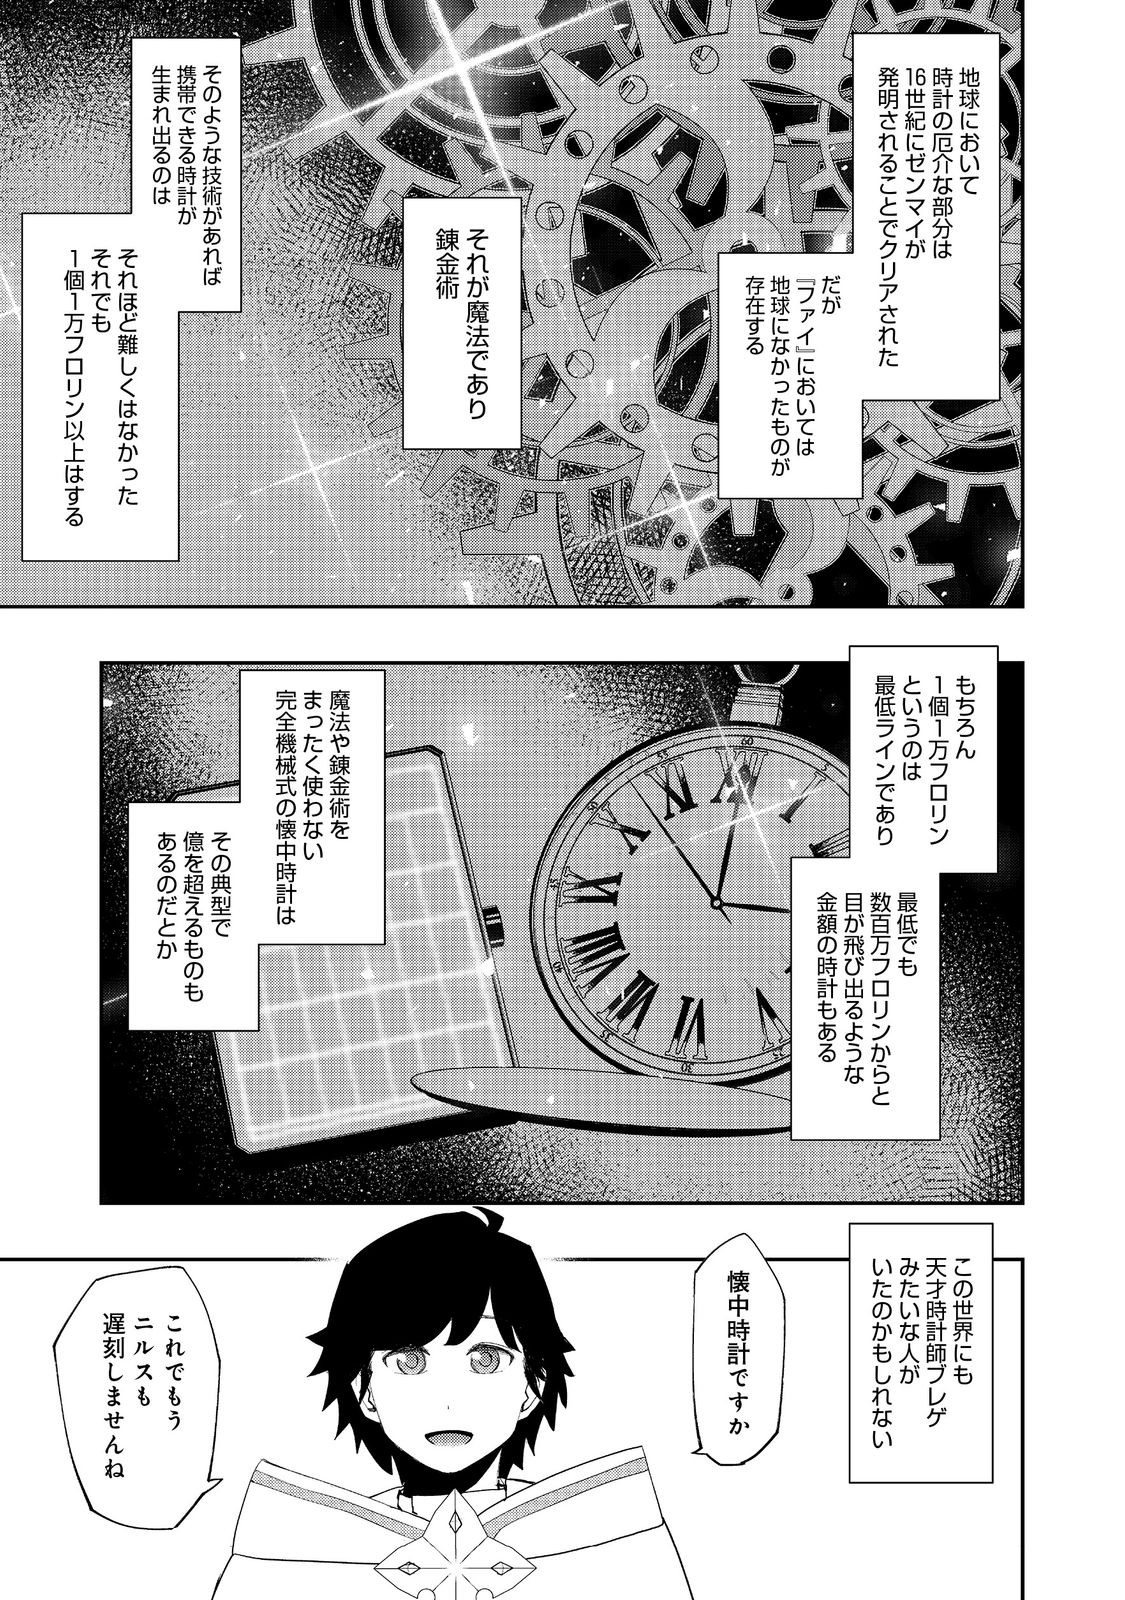 Mizu Zokusei no Mahou Tsukai - Chapter 24 - Page 3